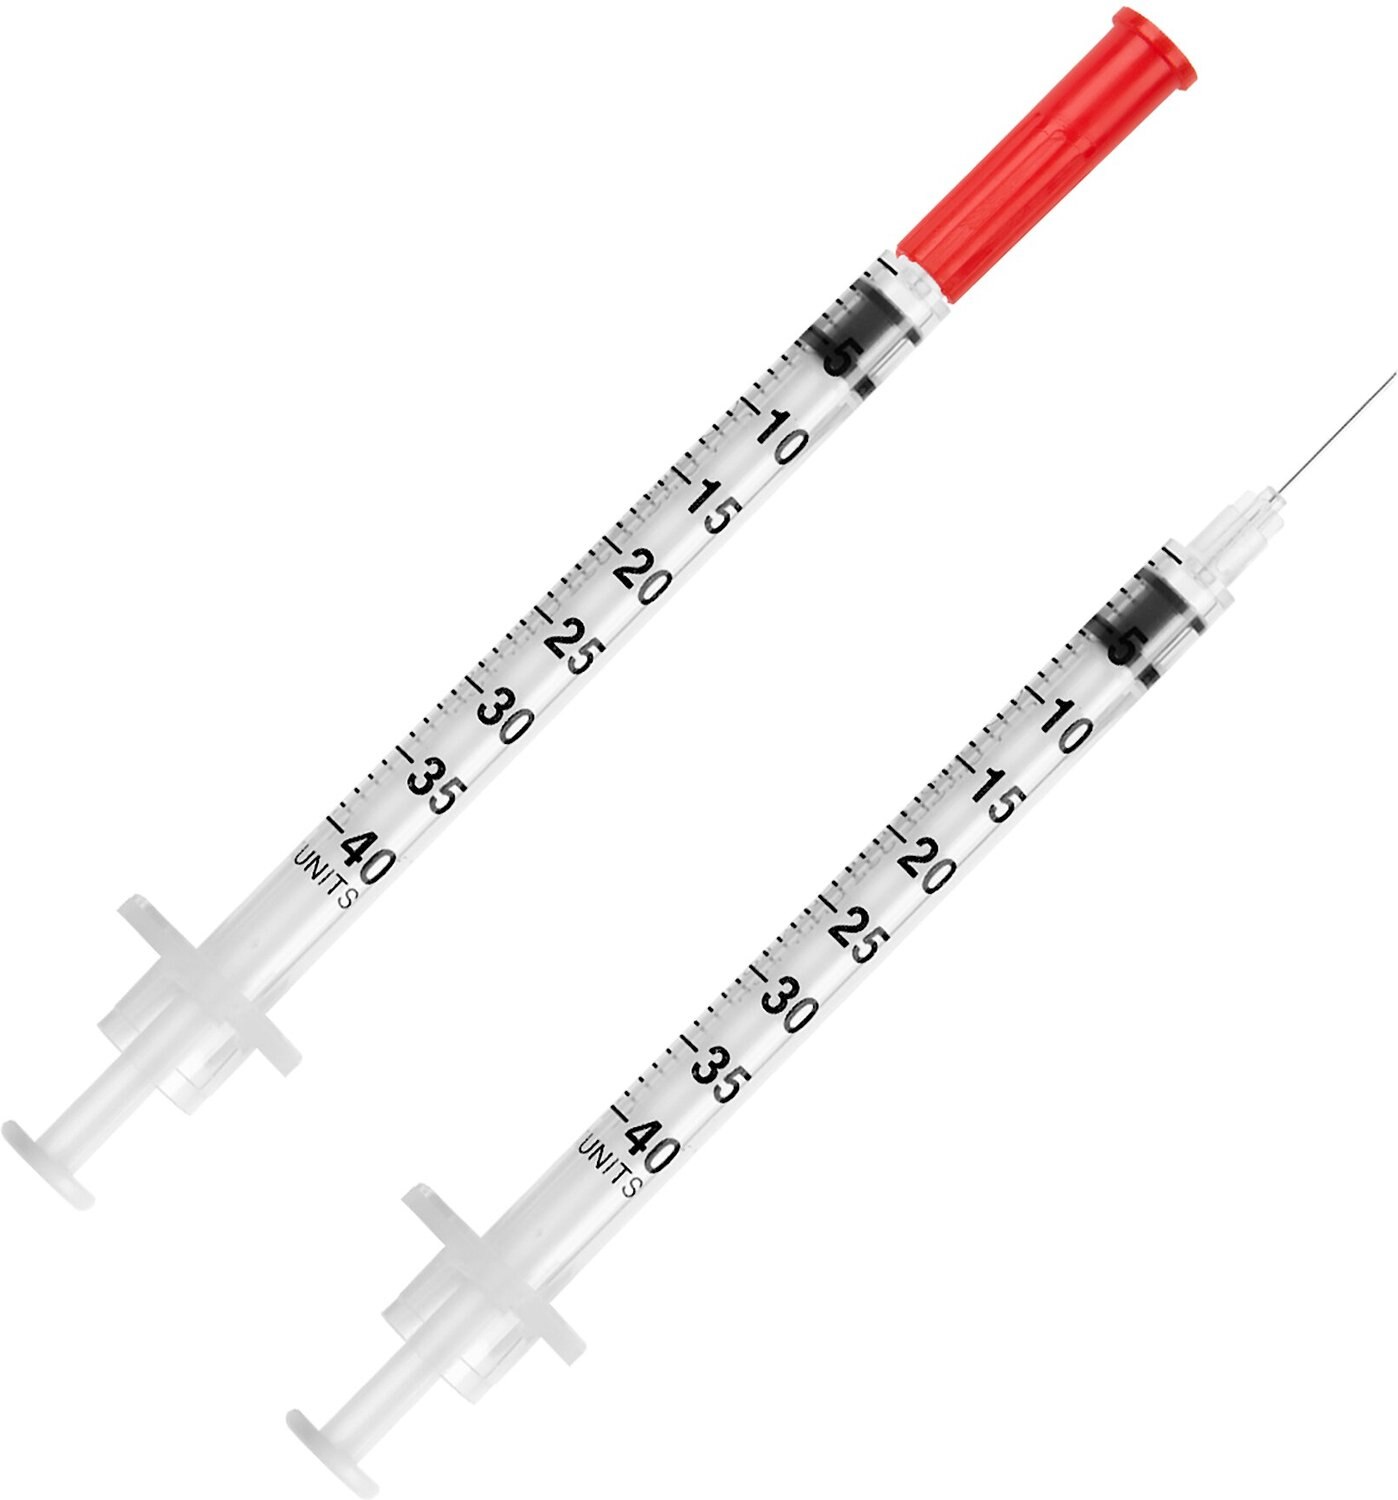 UltiCare UltiGuard Safe Pack Insulin Syringes U-40 29 Gauge x 0.5-in, 1